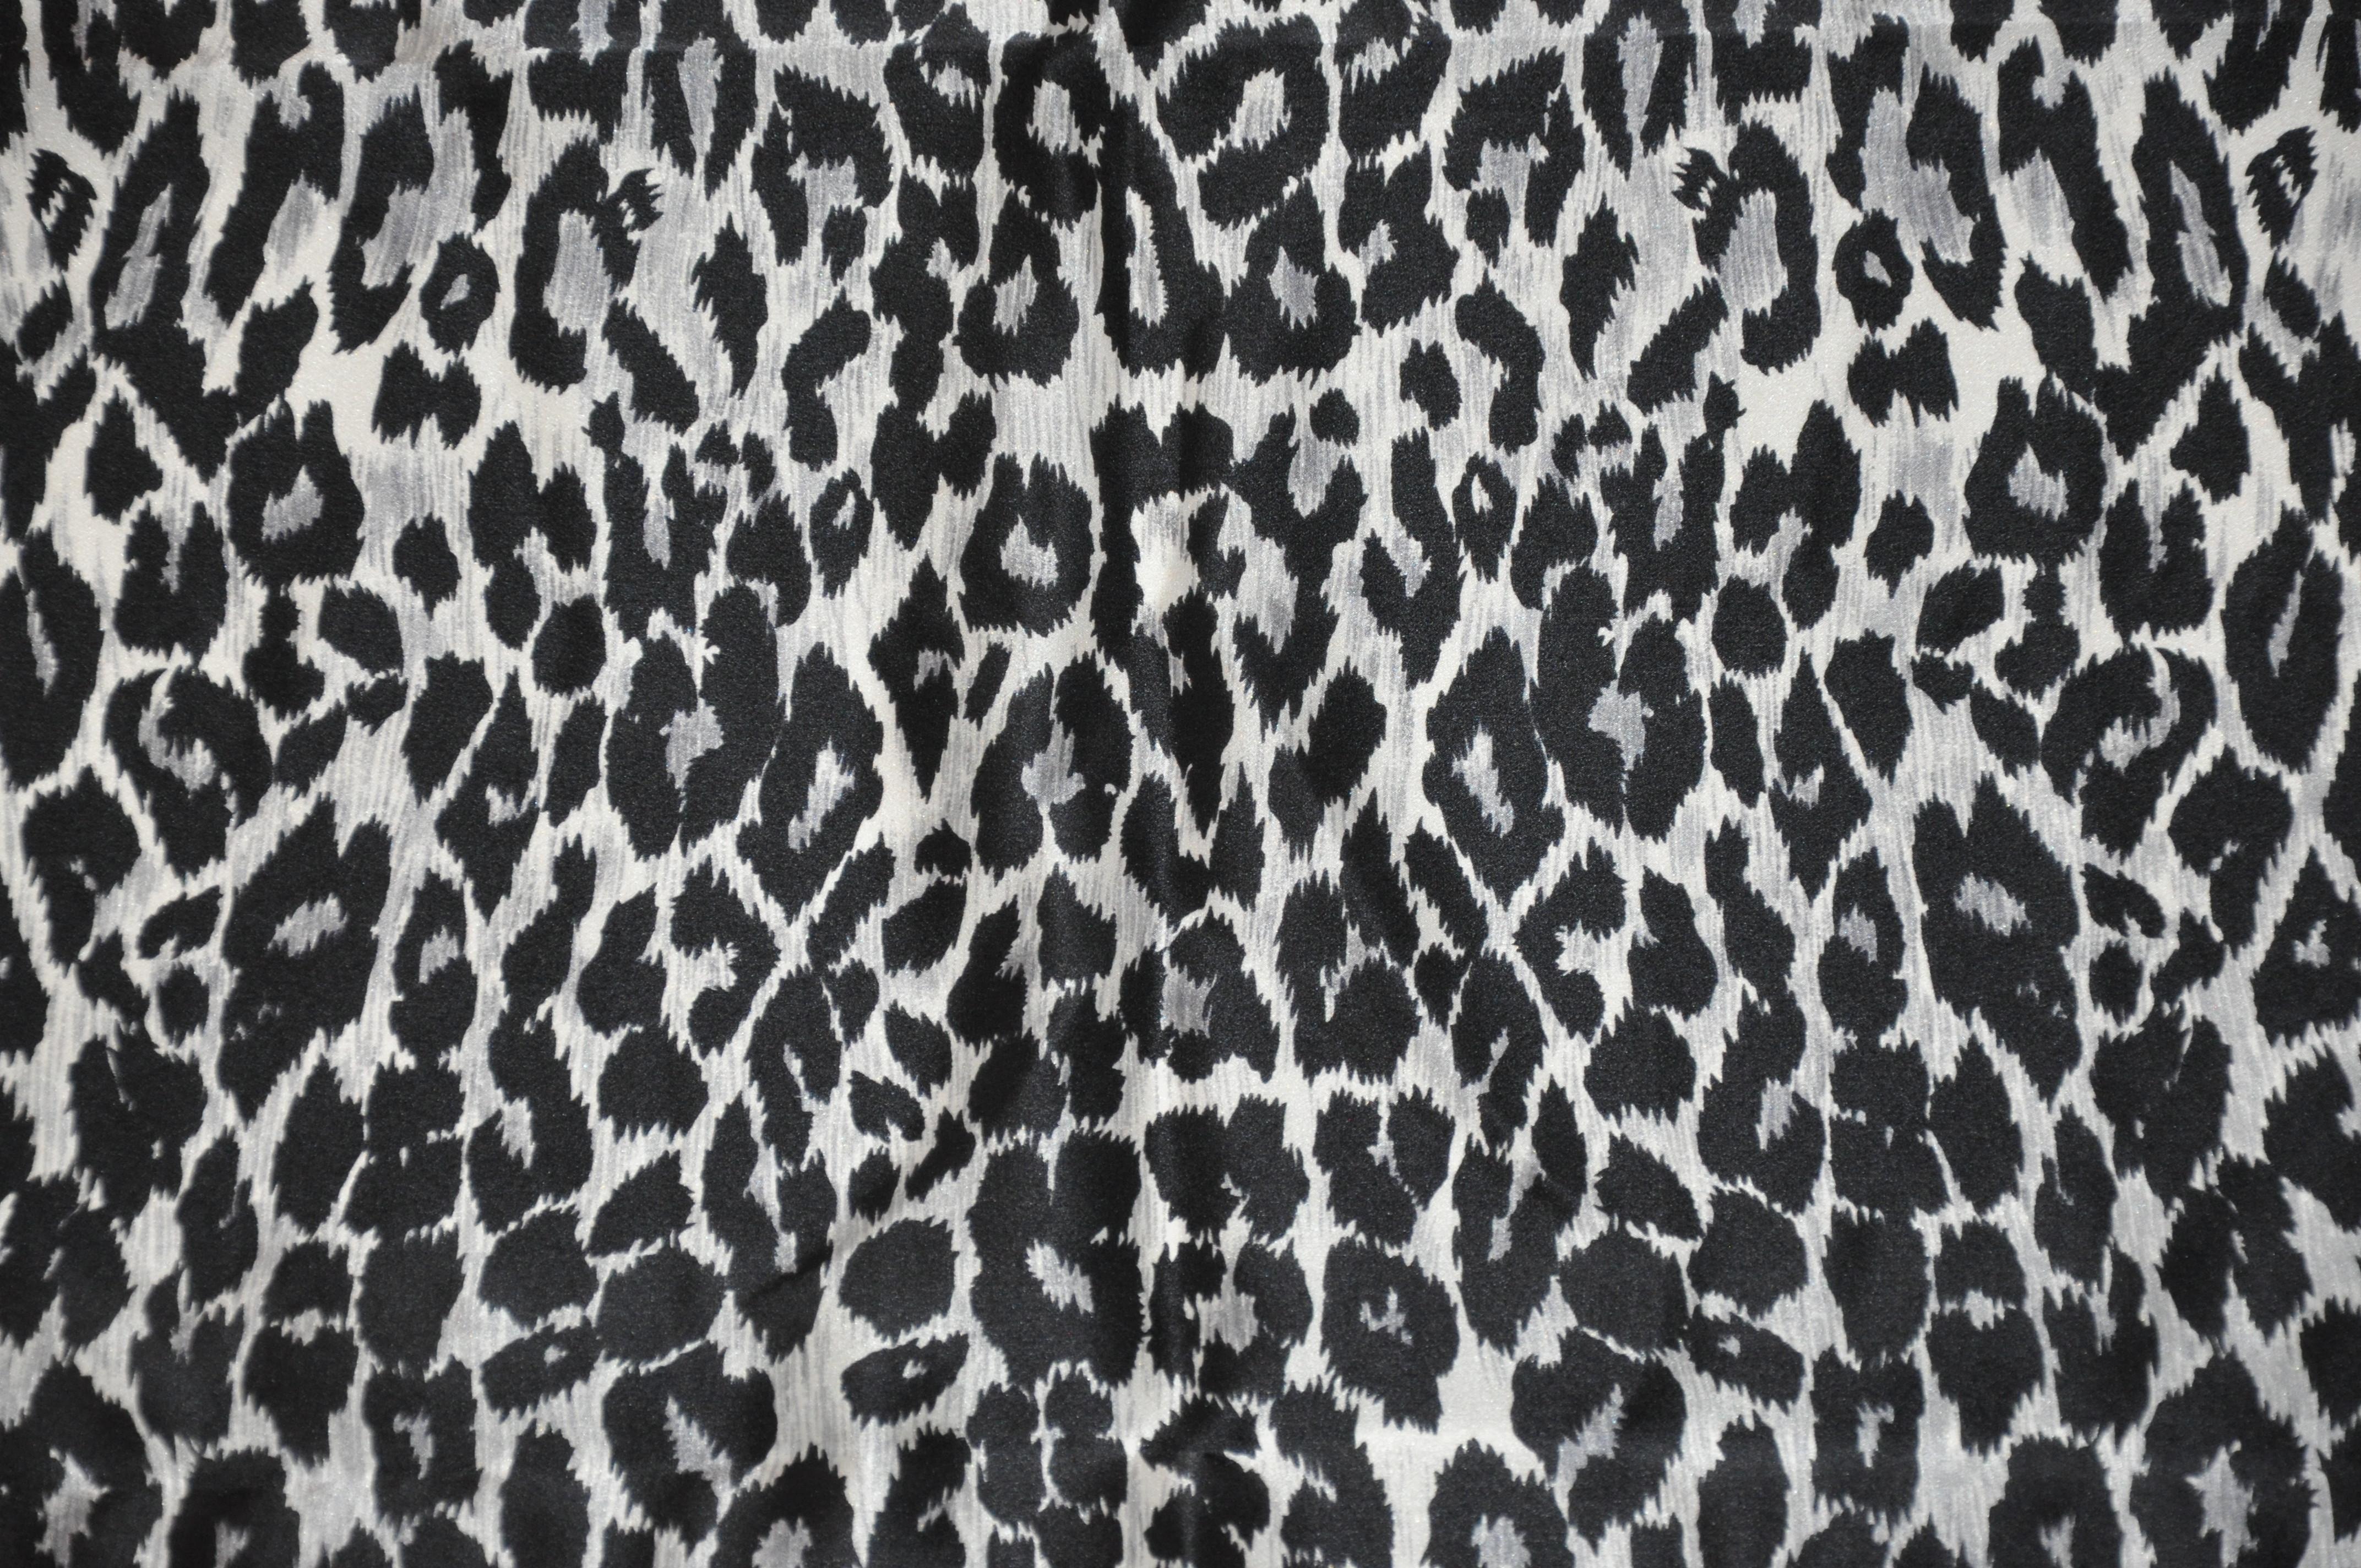        Krizia wunderbar detailliert majestätischen schwarzen und stahlgrauen Leopard Print Seidenschal ist mit handgerollten Kanten akzentuiert und misst 34 cm x 34 cm. Hergestellt in Italien.